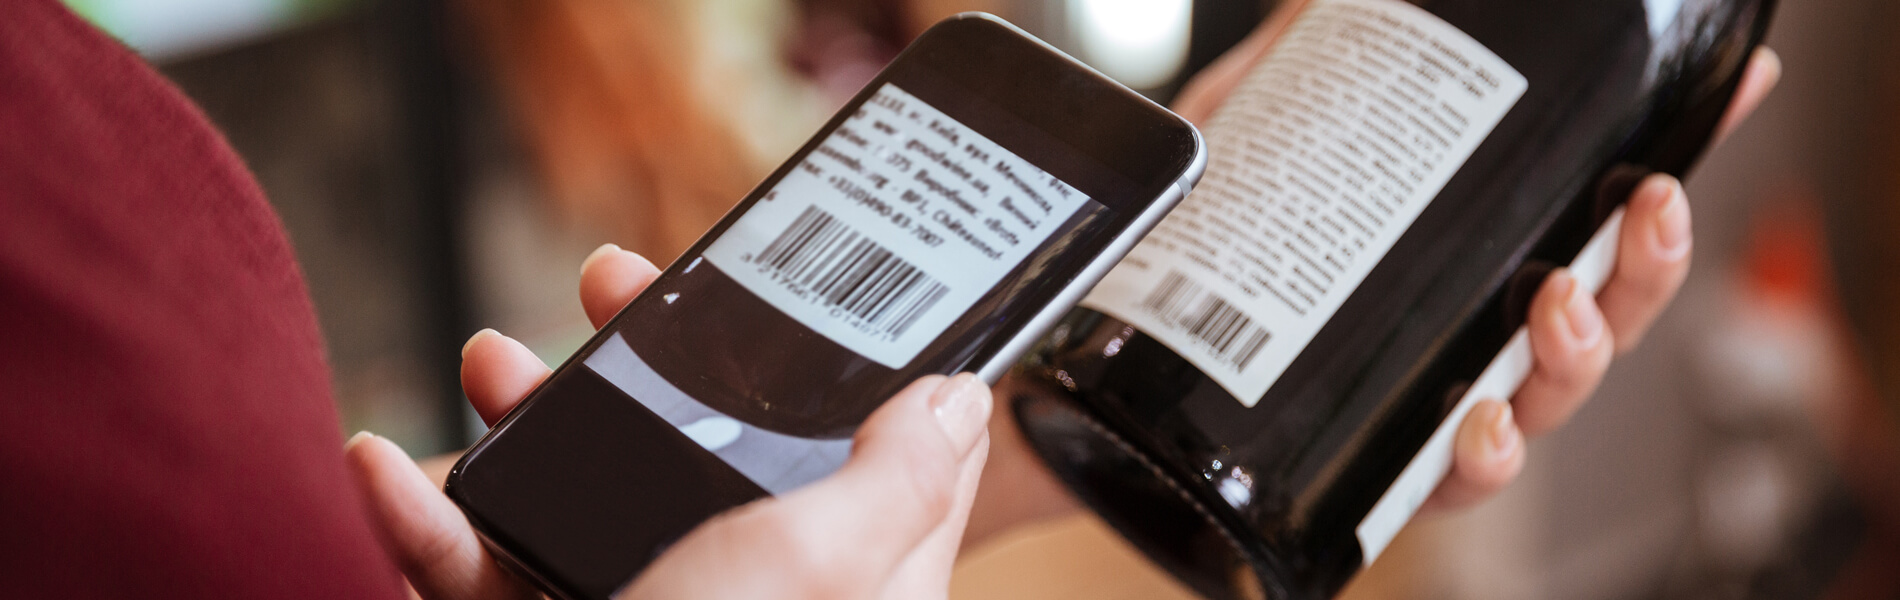 葡萄酒瓶条形码携带各种追踪信息，请扫描葡萄酒瓶条形码